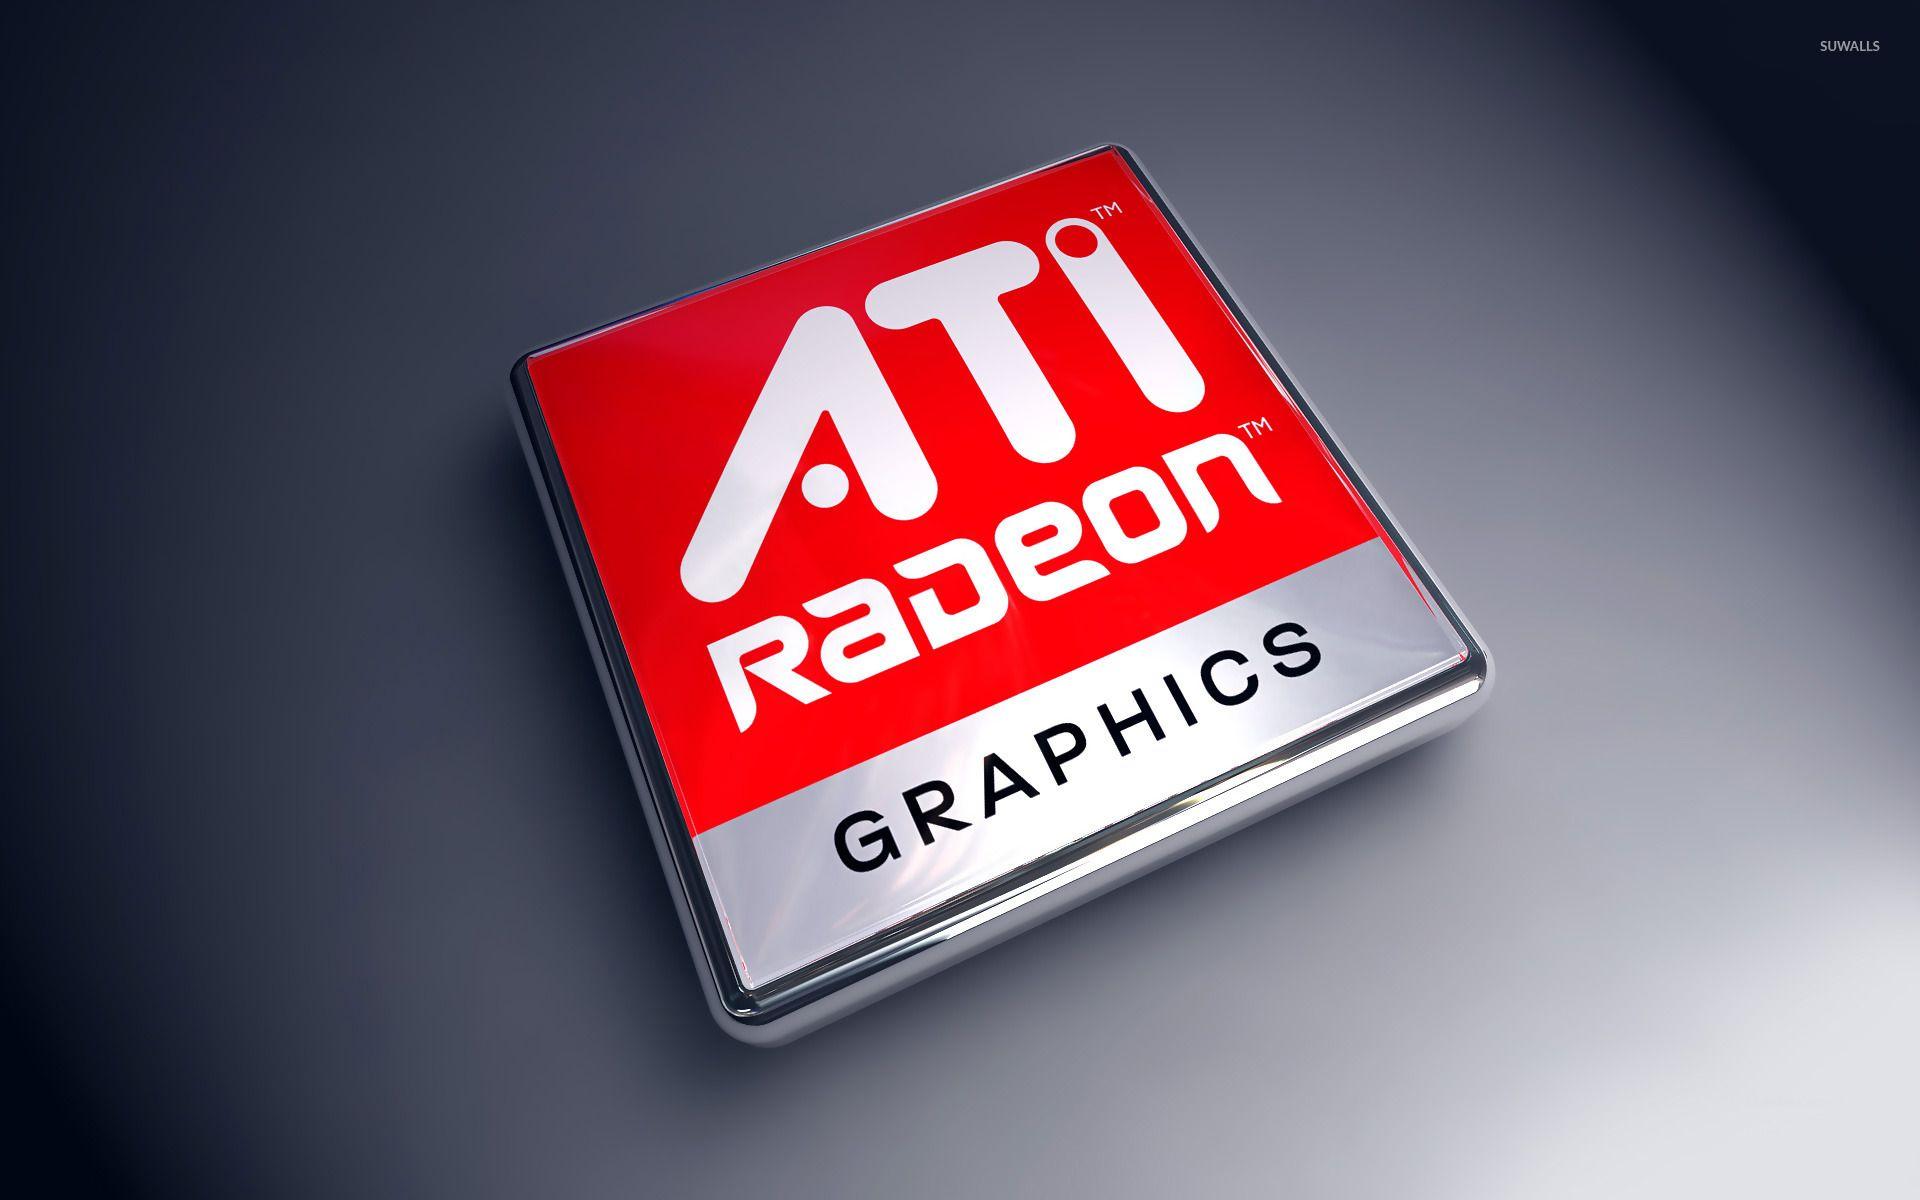 AMD Radeon wallpaper wallpaper